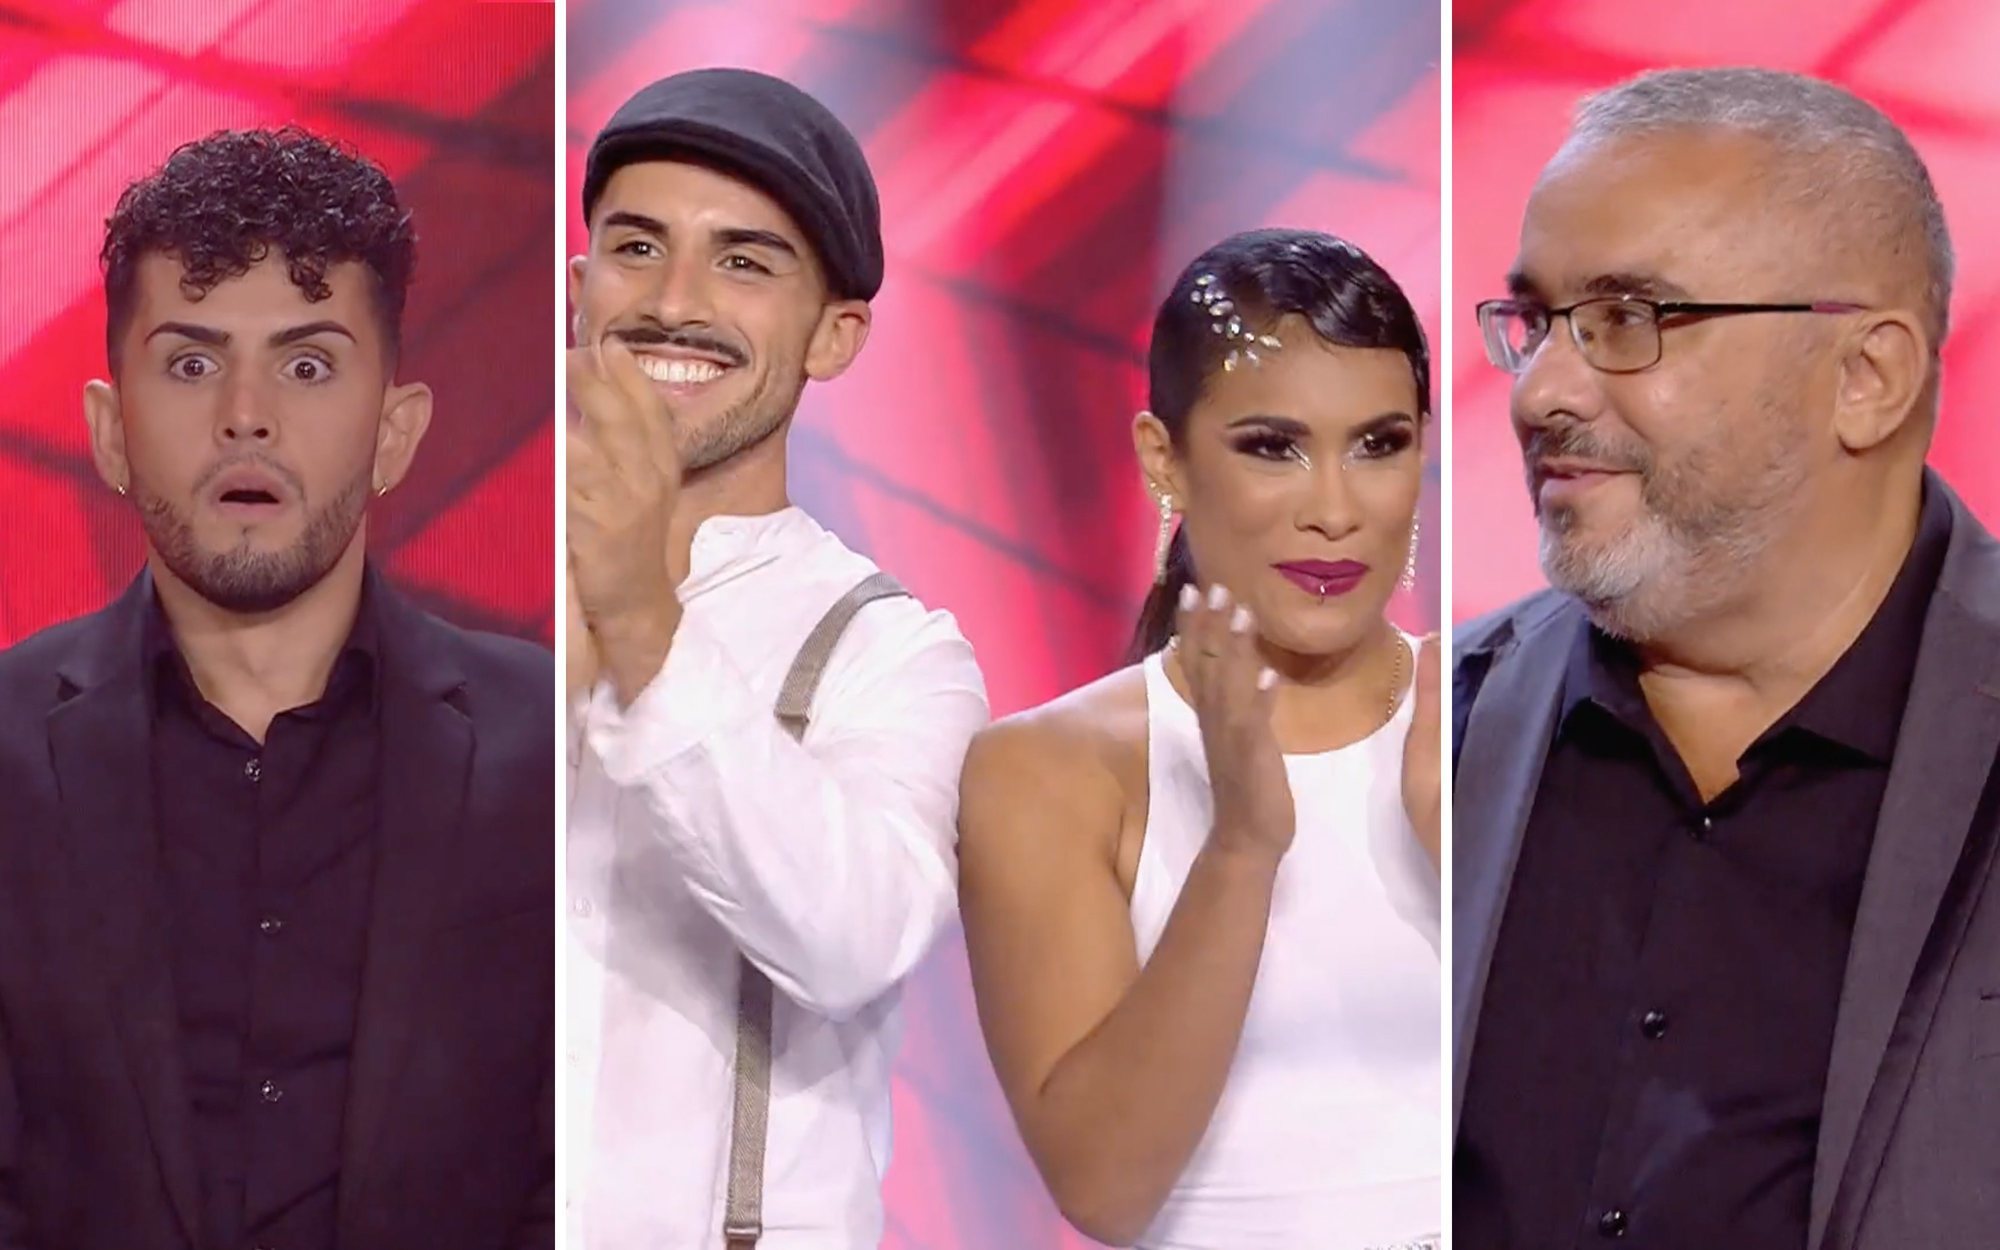 Cristian Montilla, Juan Carlos Martos y el dúo Stefanny y Michael pasan a la final de 'Got Talent España'